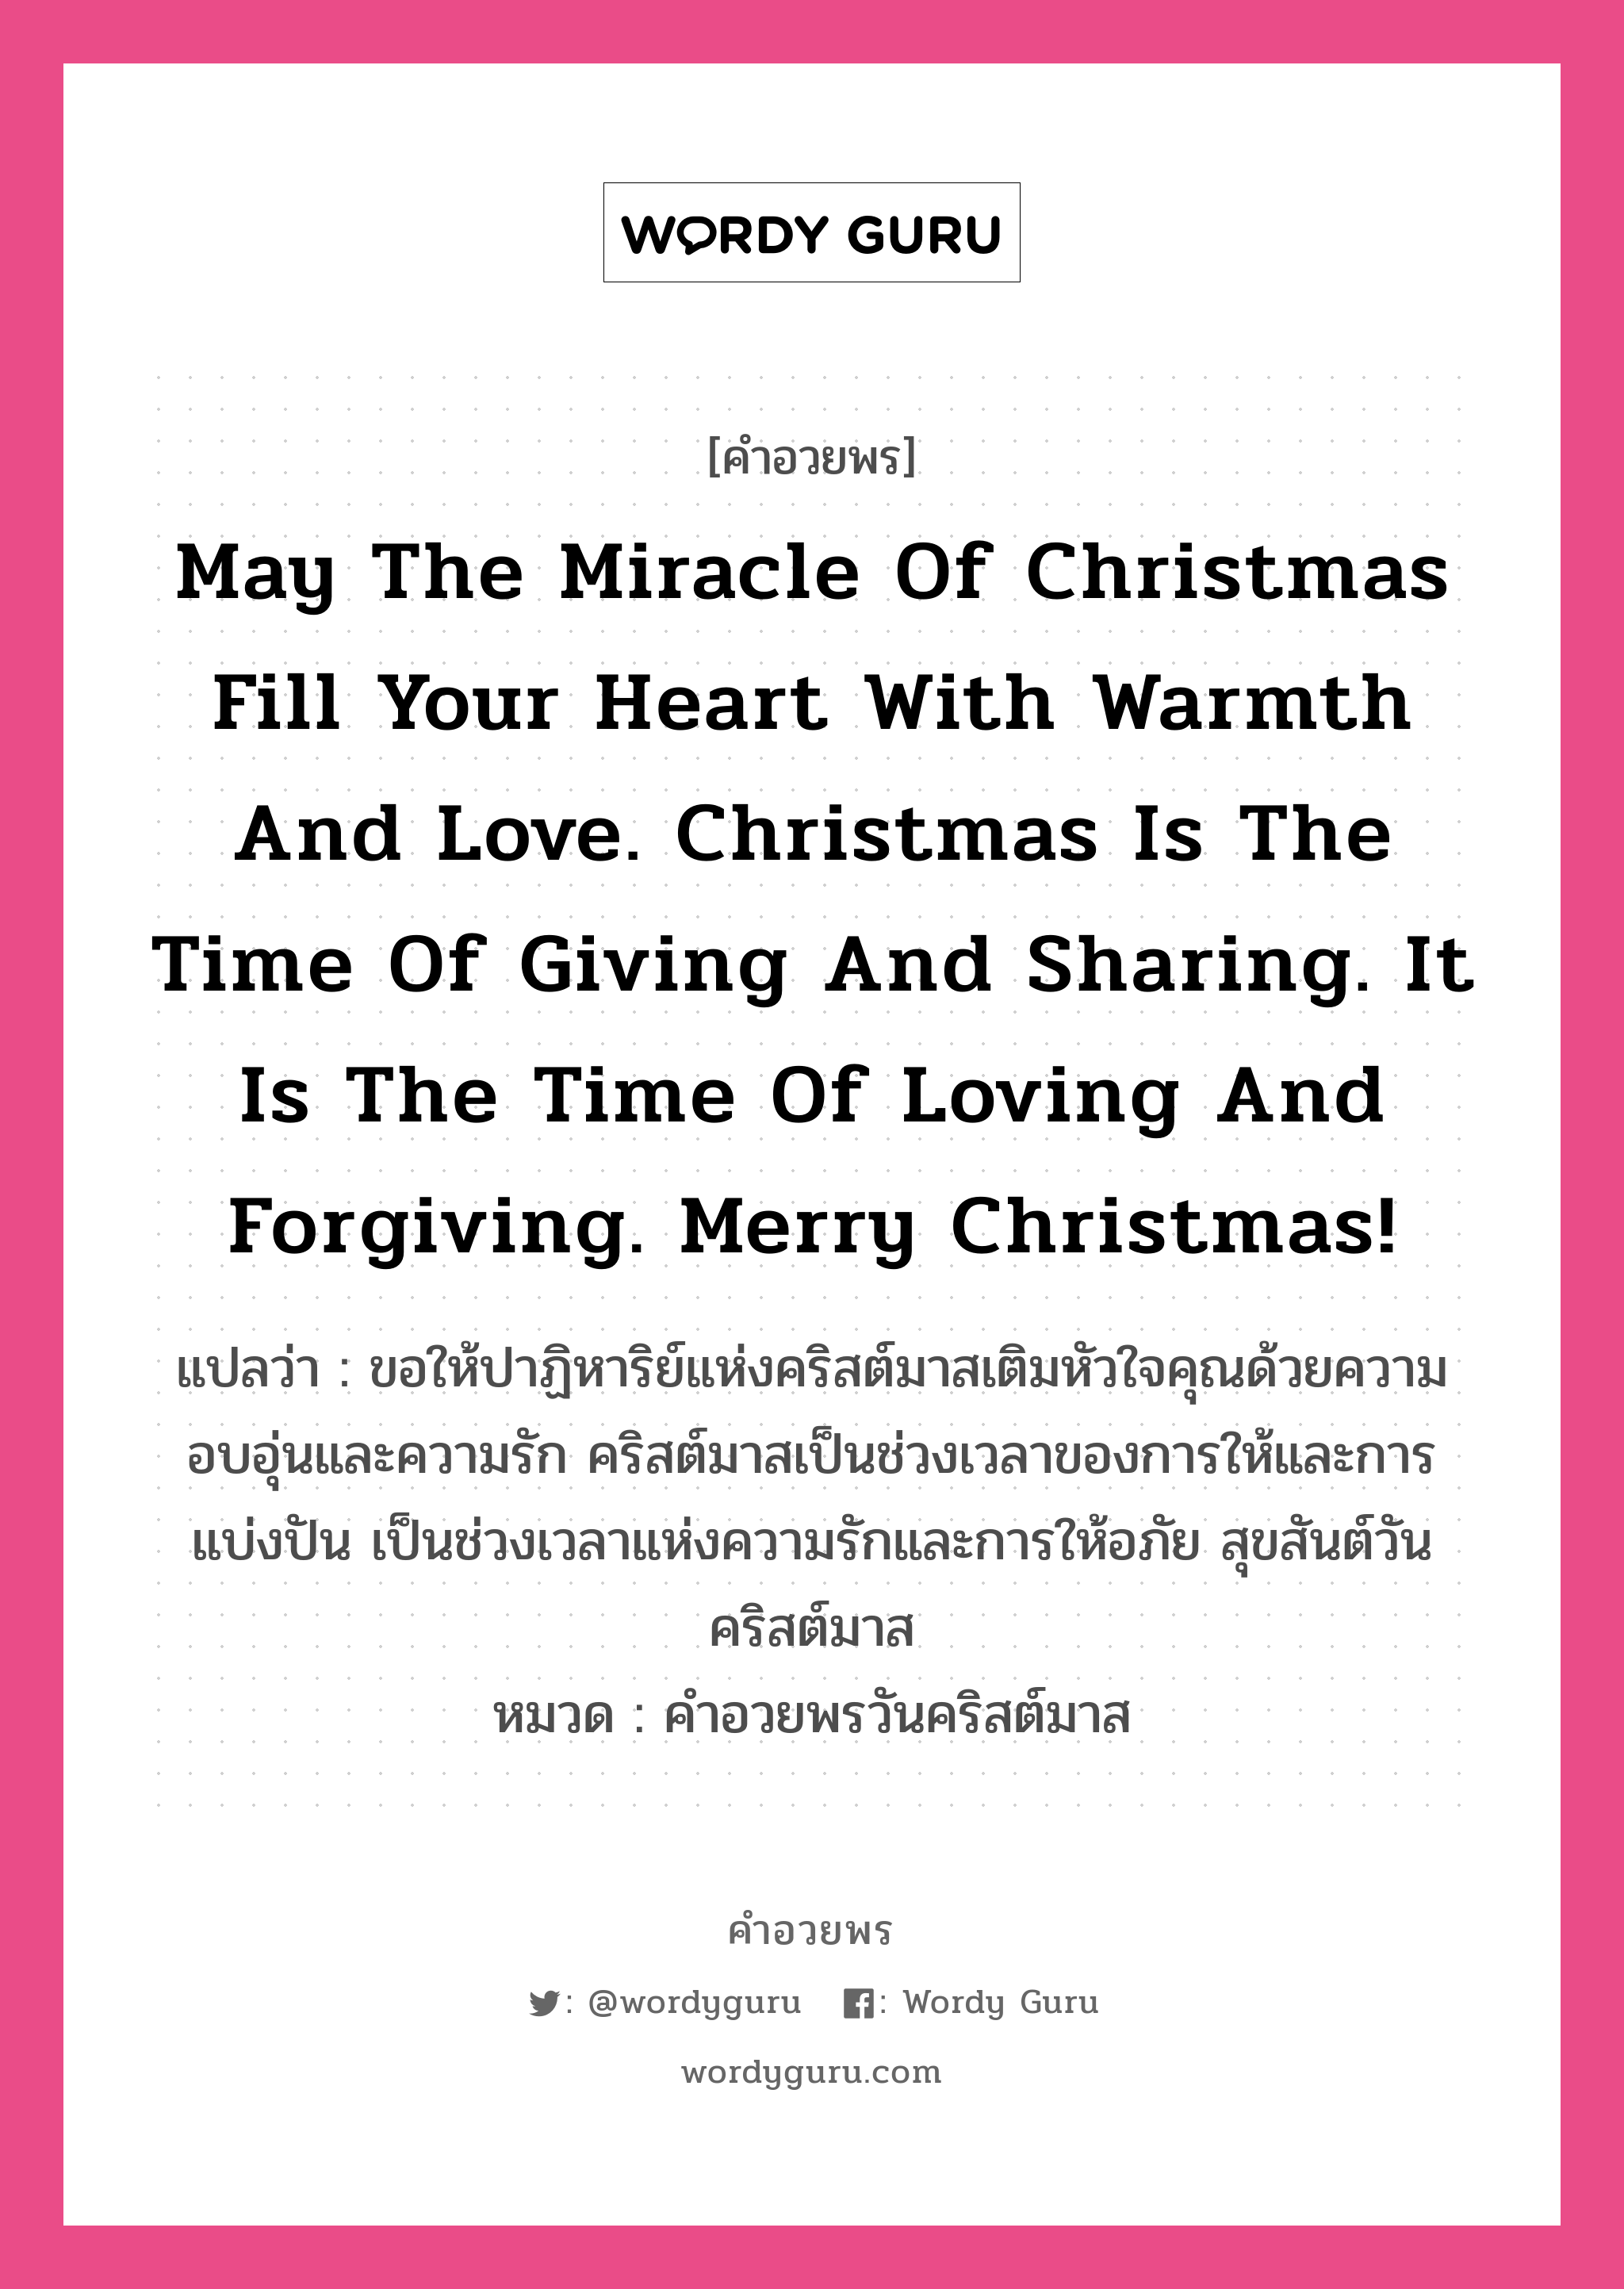 คำอวยพร May the miracle of Christmas fill your heart with warmth and love. Christmas is the time of giving and sharing. It is the time of loving and forgiving. Merry Christmas! คืออะไร?, แปลว่า ขอให้ปาฏิหาริย์แห่งคริสต์มาสเติมหัวใจคุณด้วยความอบอุ่นและความรัก คริสต์มาสเป็นช่วงเวลาของการให้และการแบ่งปัน เป็นช่วงเวลาแห่งความรักและการให้อภัย สุขสันต์วันคริสต์มาส หมวด คำอวยพรวันคริสต์มาส หมวด คำอวยพรวันคริสต์มาส